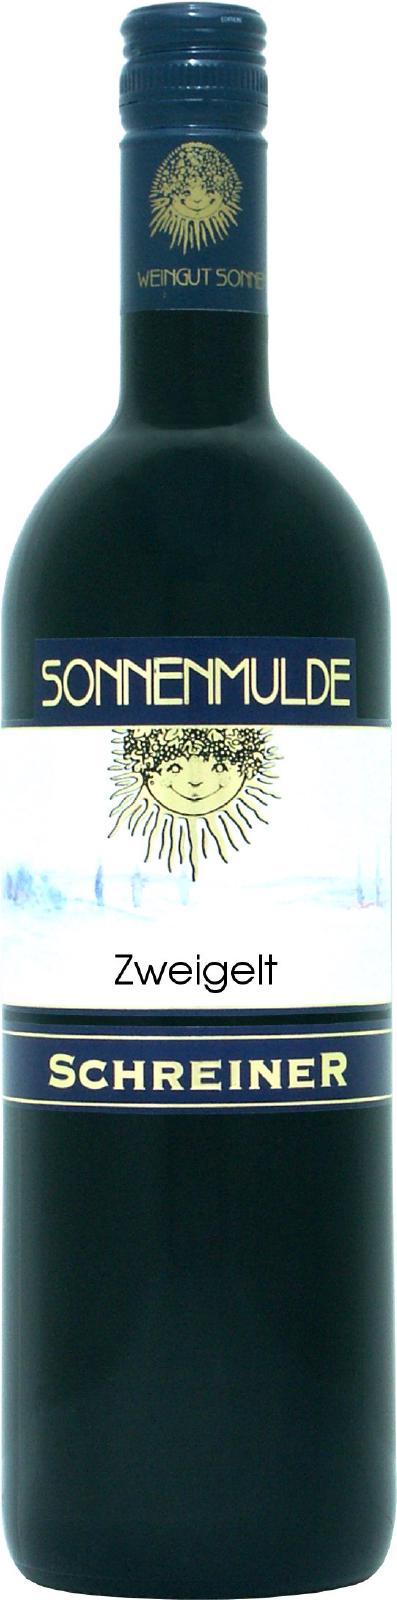 A bottle of Zweigelt